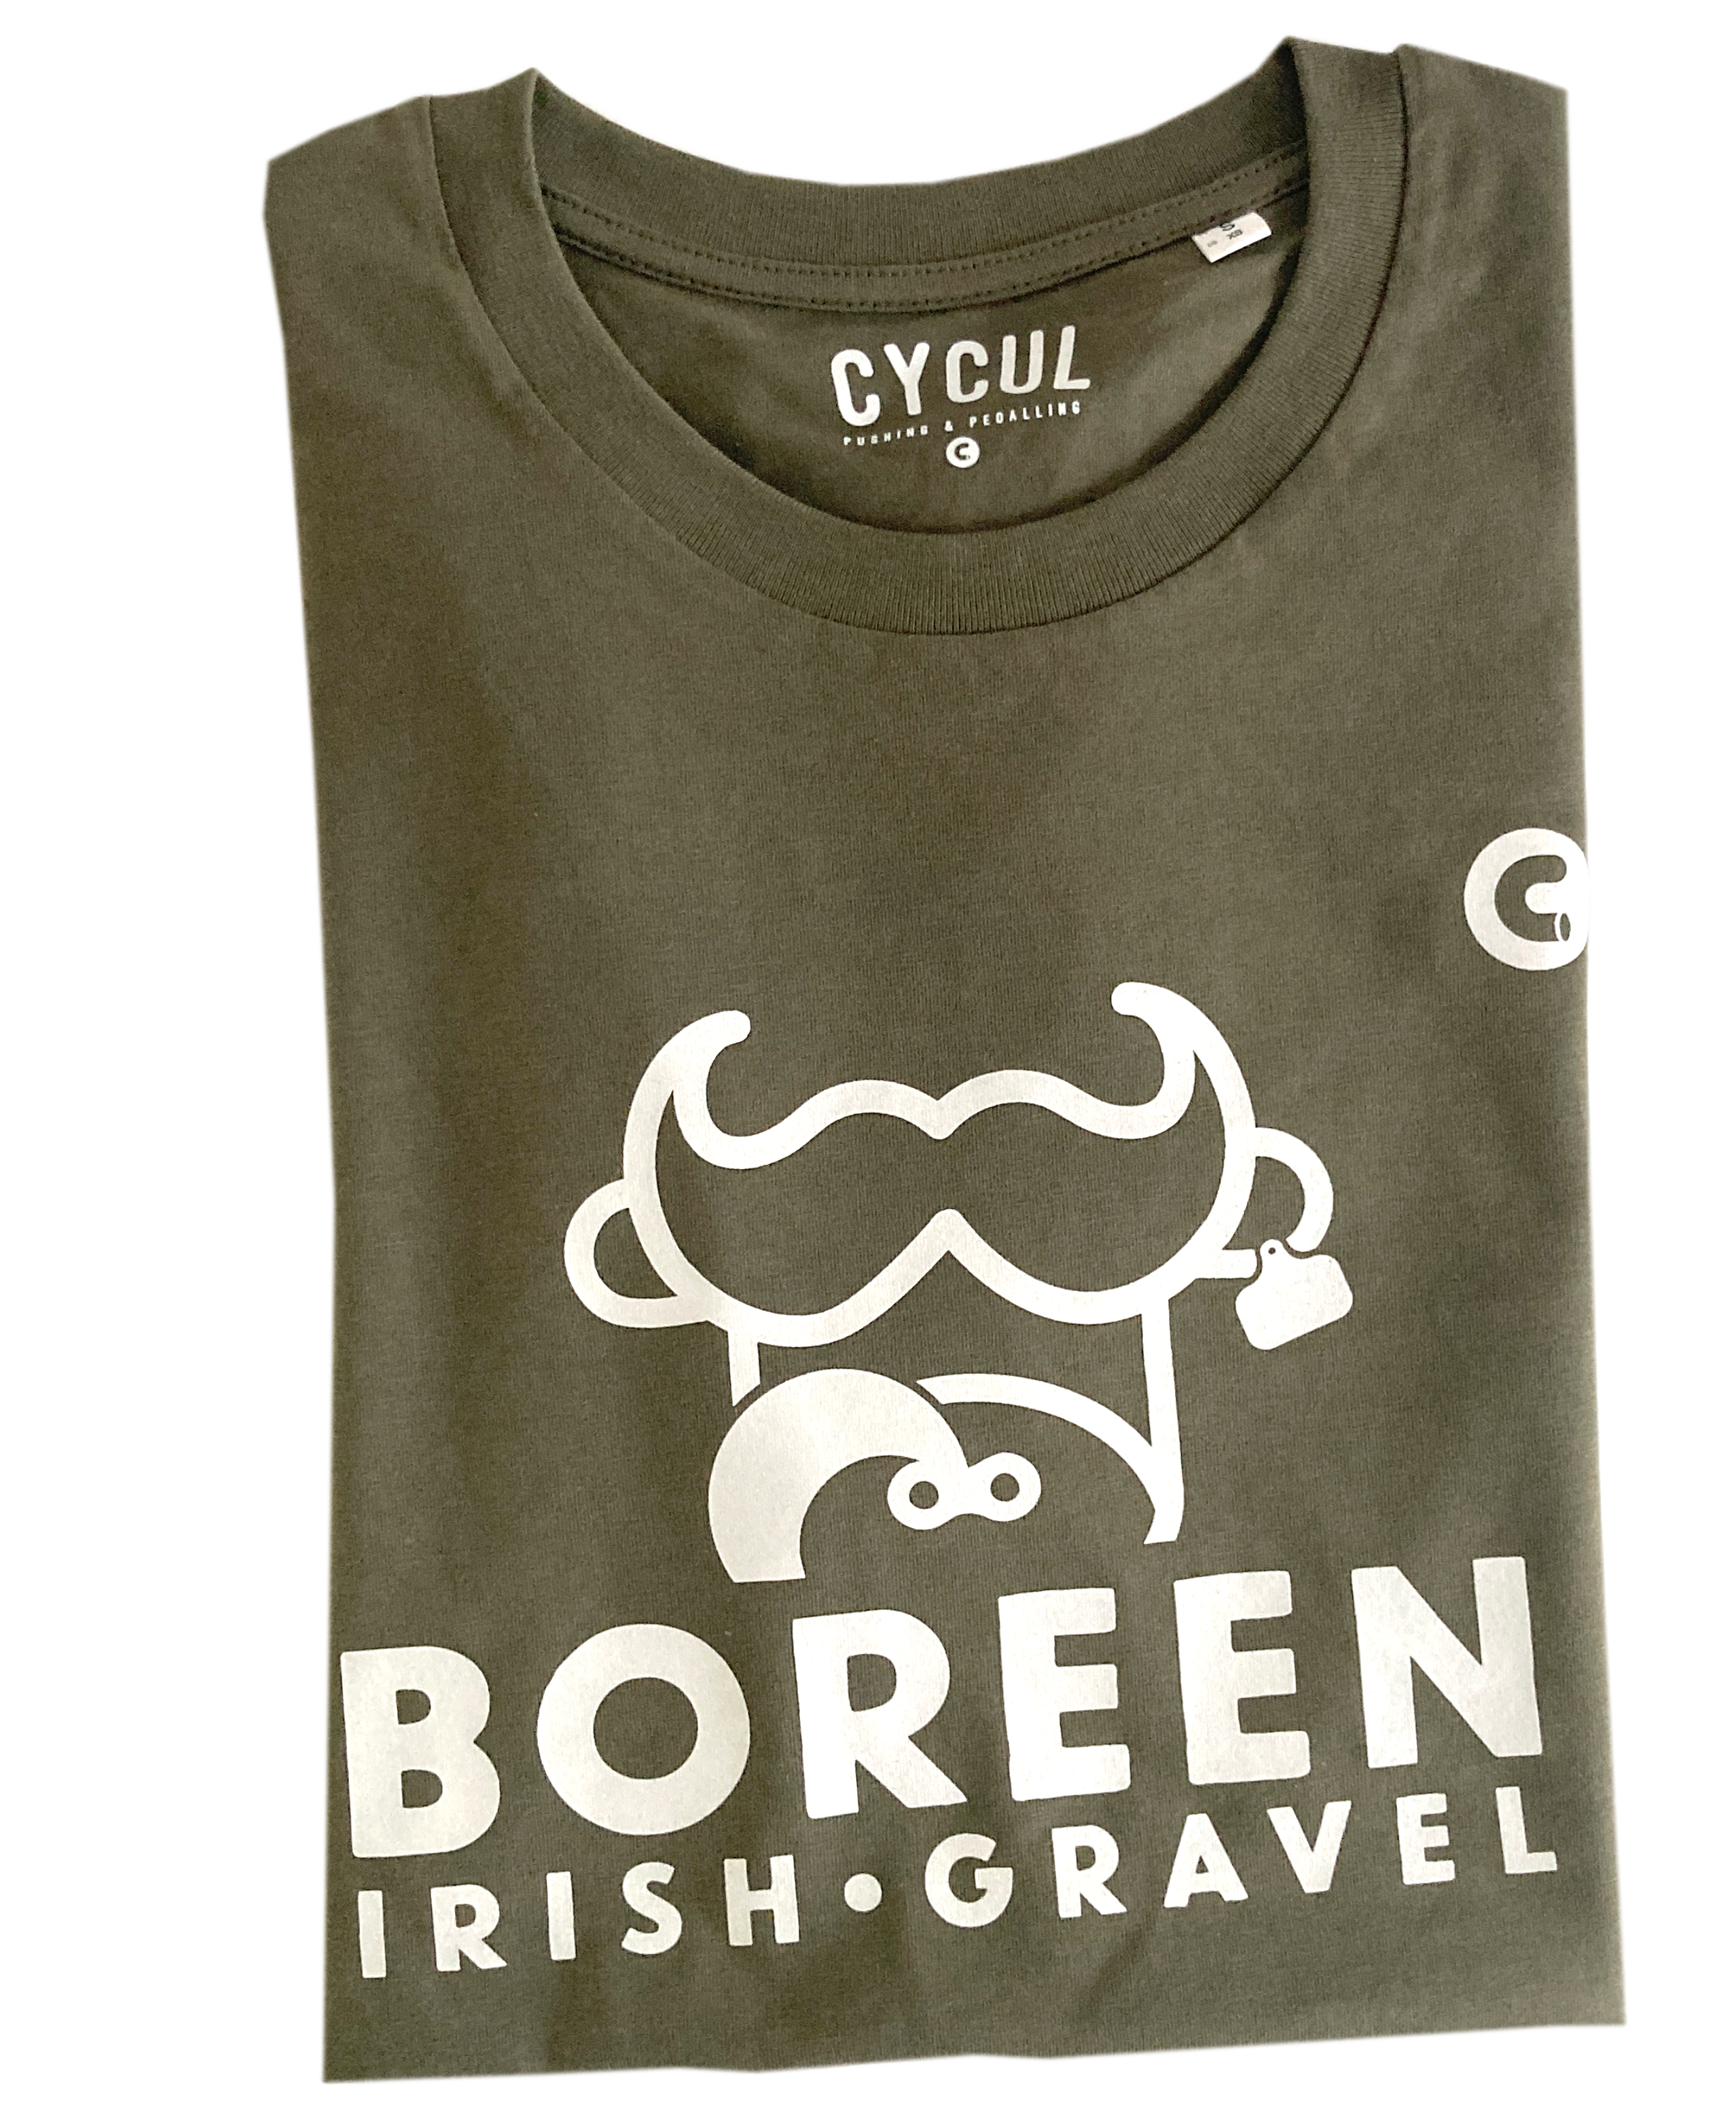 Boreen: Irish Gravel